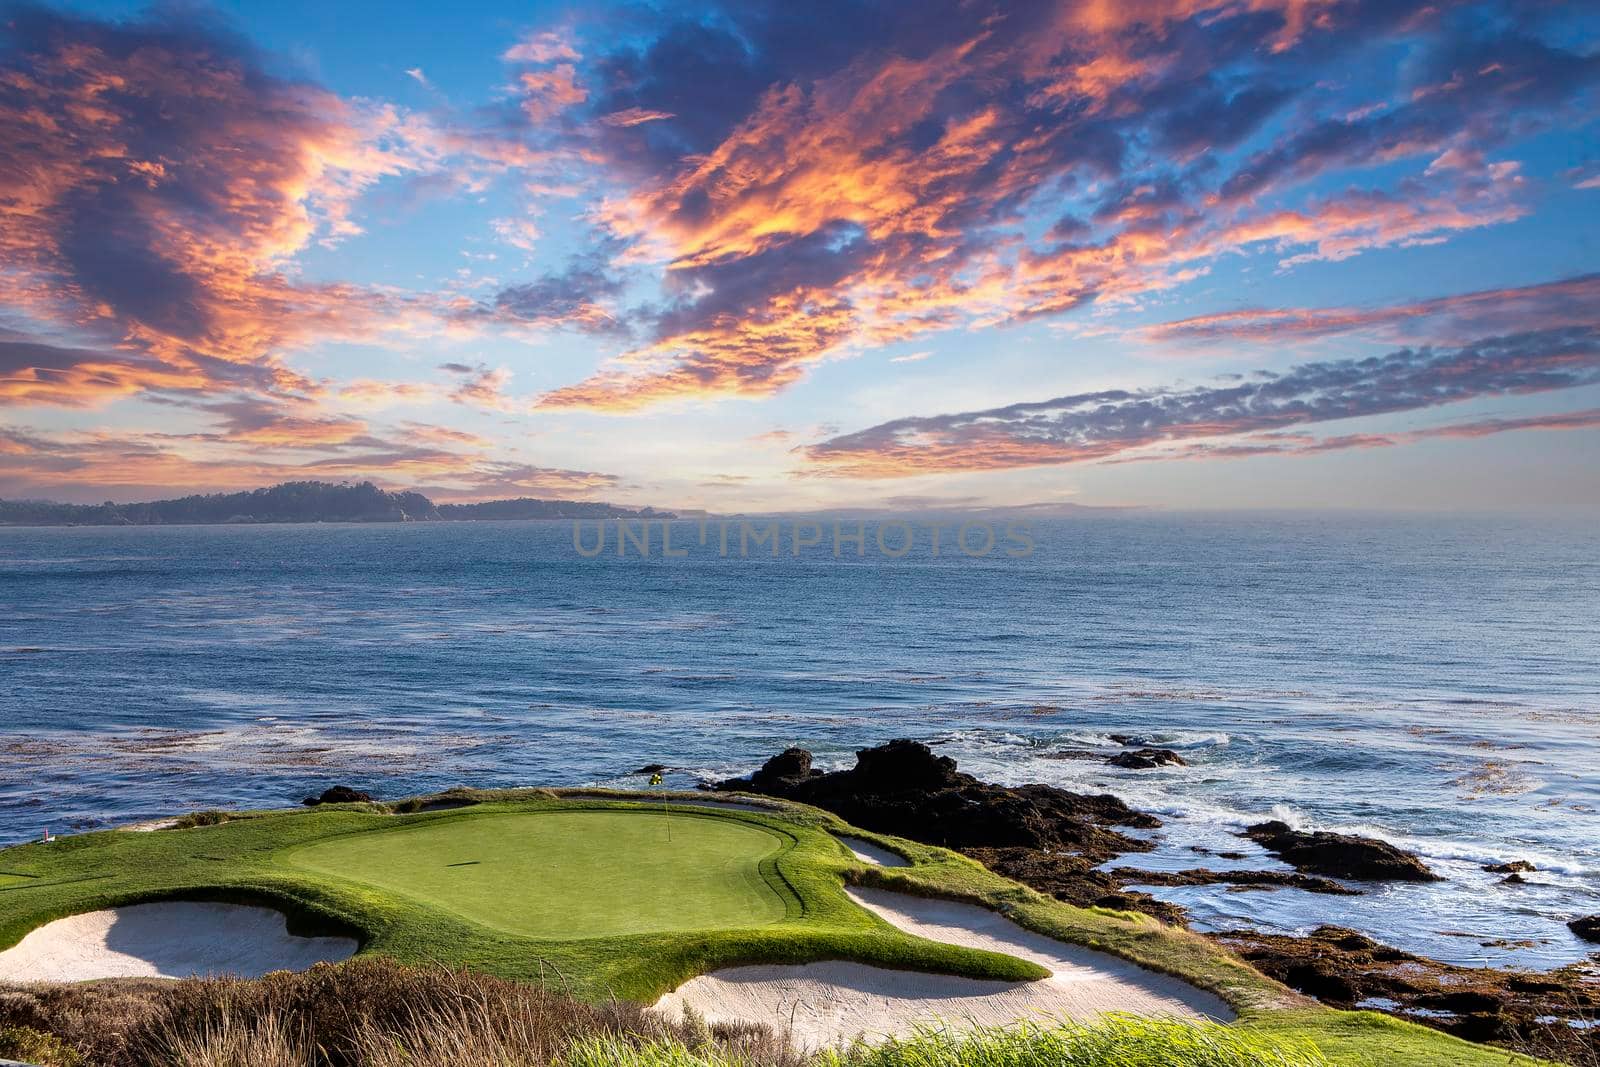 Pebble Beach golf course, Monterey, California, USA by photogolfer